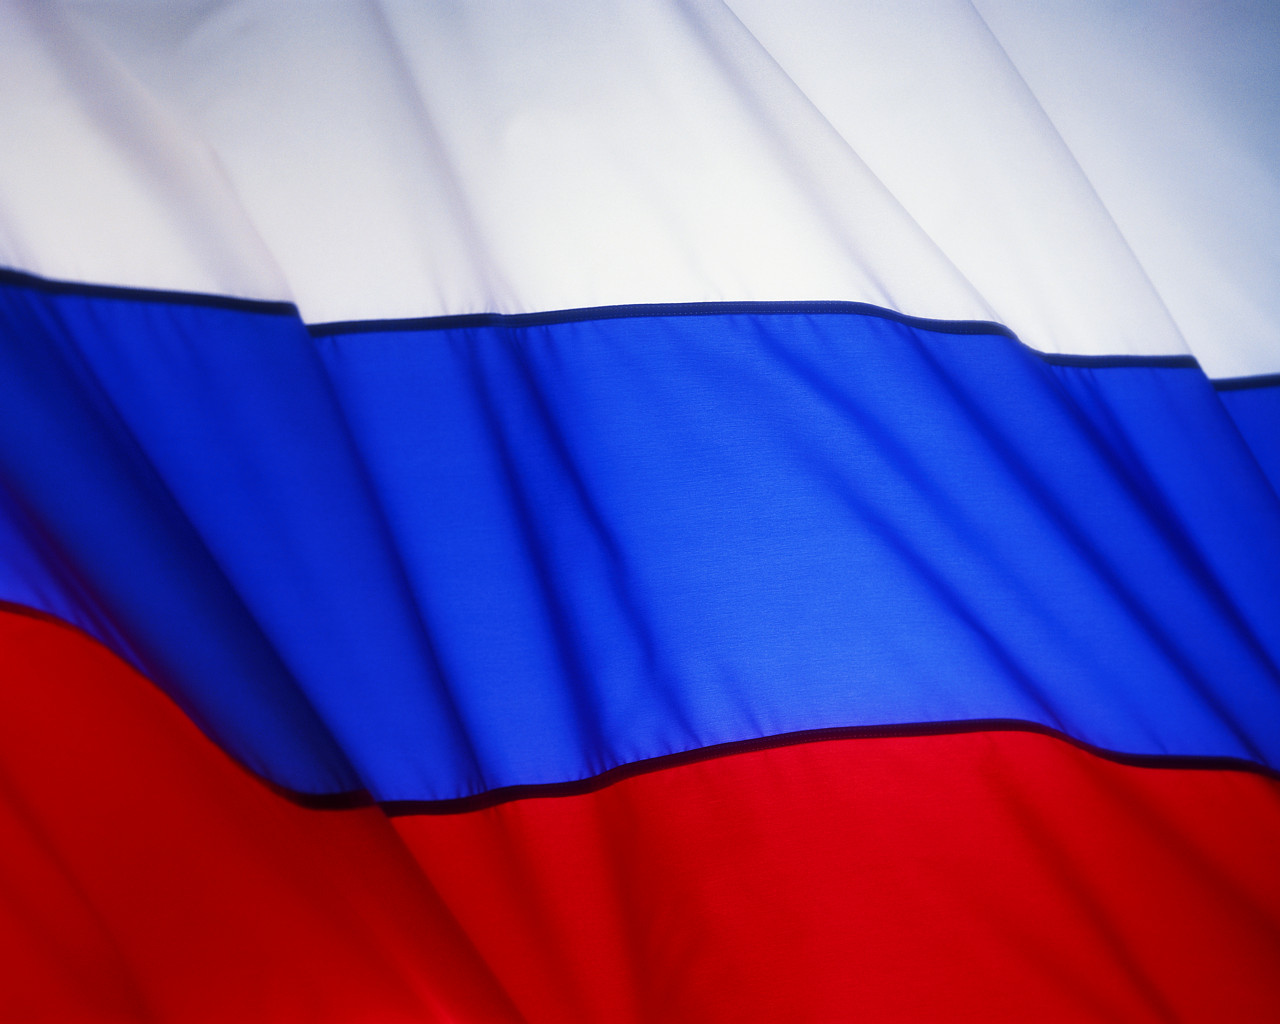 Ρωσία: Θα λάβουμε όλα τα απαραίτητα μέτρα για υπερασπιστούμε τα εδάφη μας